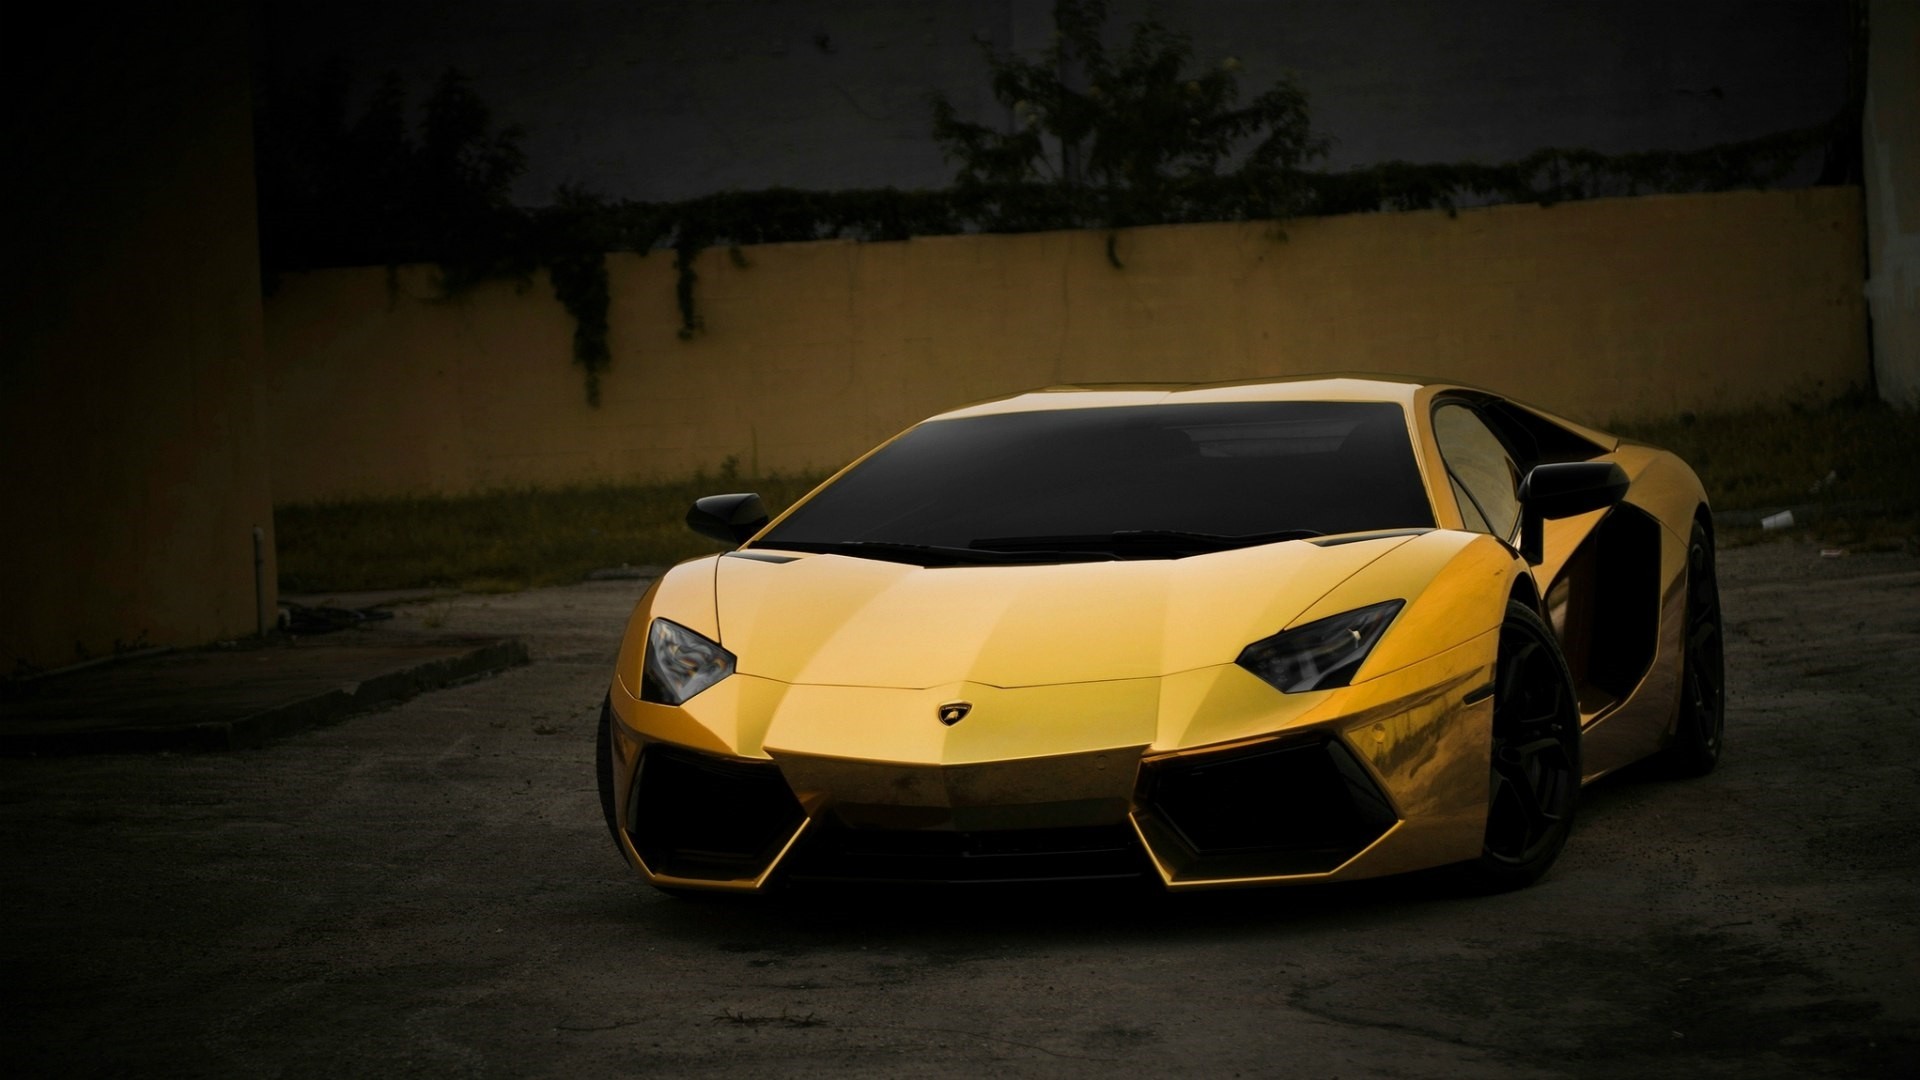 Gold Lamborghini Wallpaper Picture hd